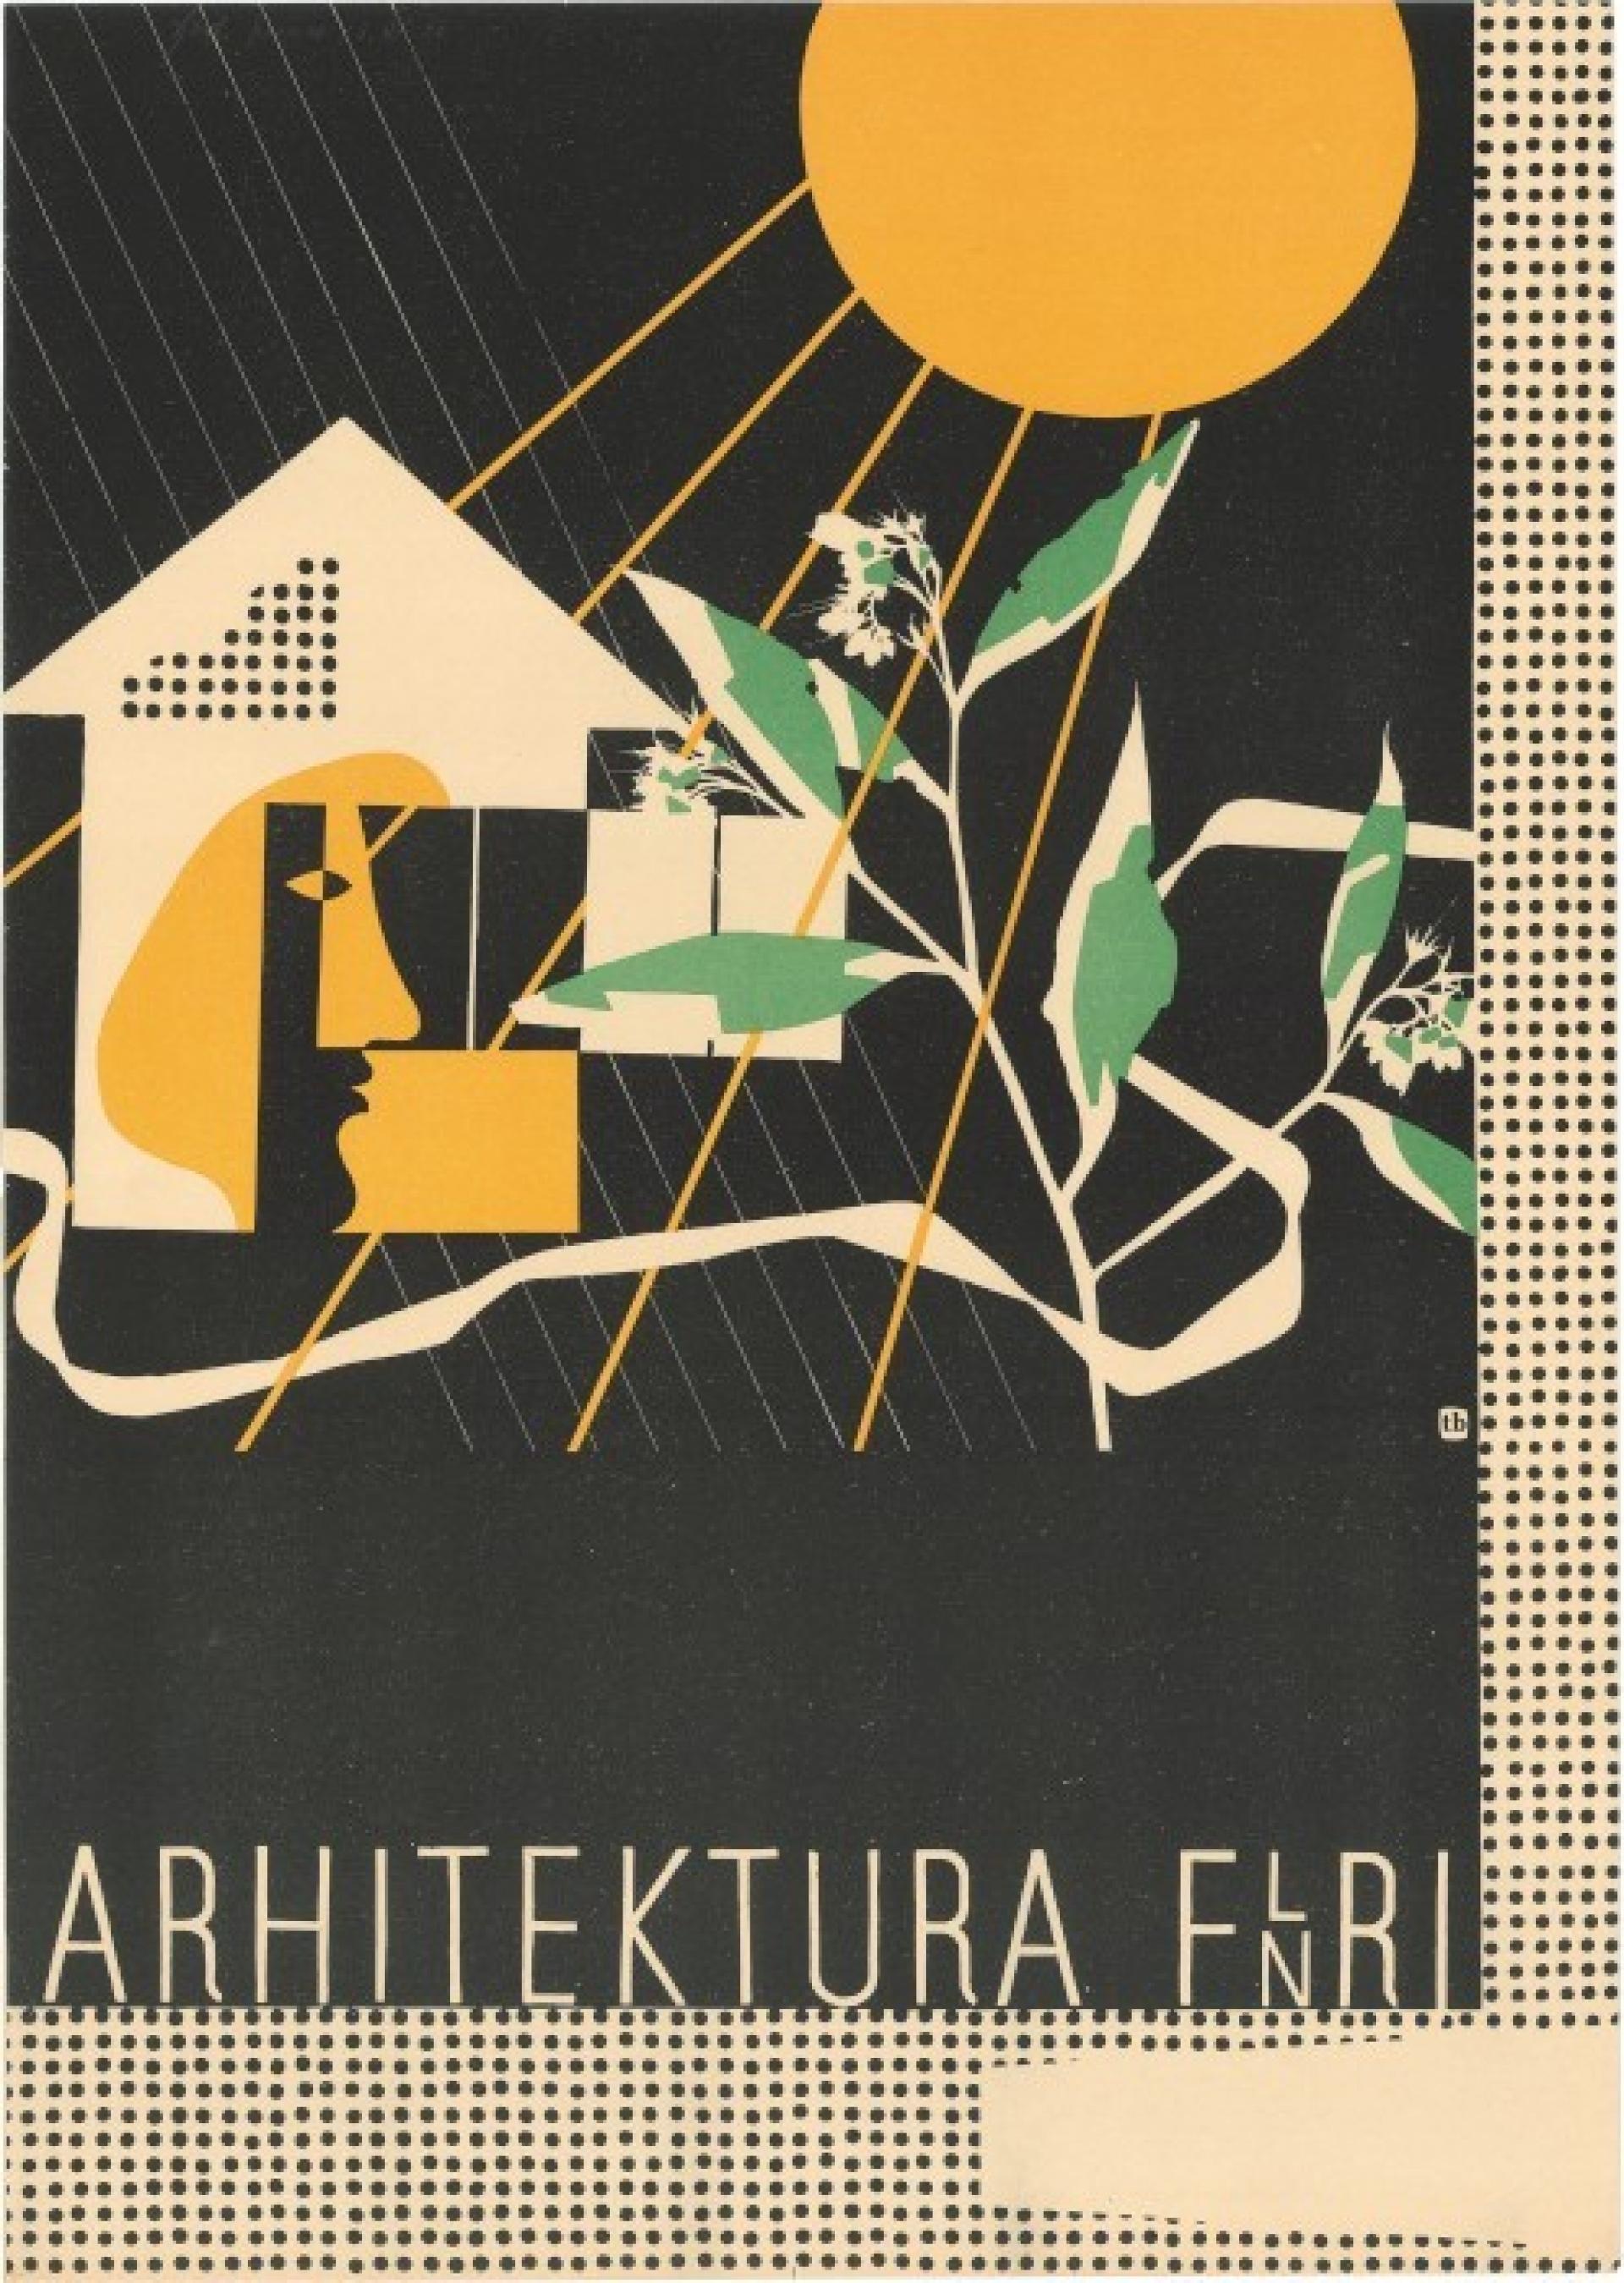 Poster “Architecture in FPR Yugoslavia” by Branka Tancig from E. Ravnikar seminar (1951), letterpress printing, Ljudska pravica Ljubljana, 510 mm x 380 mm. | Source from private archive